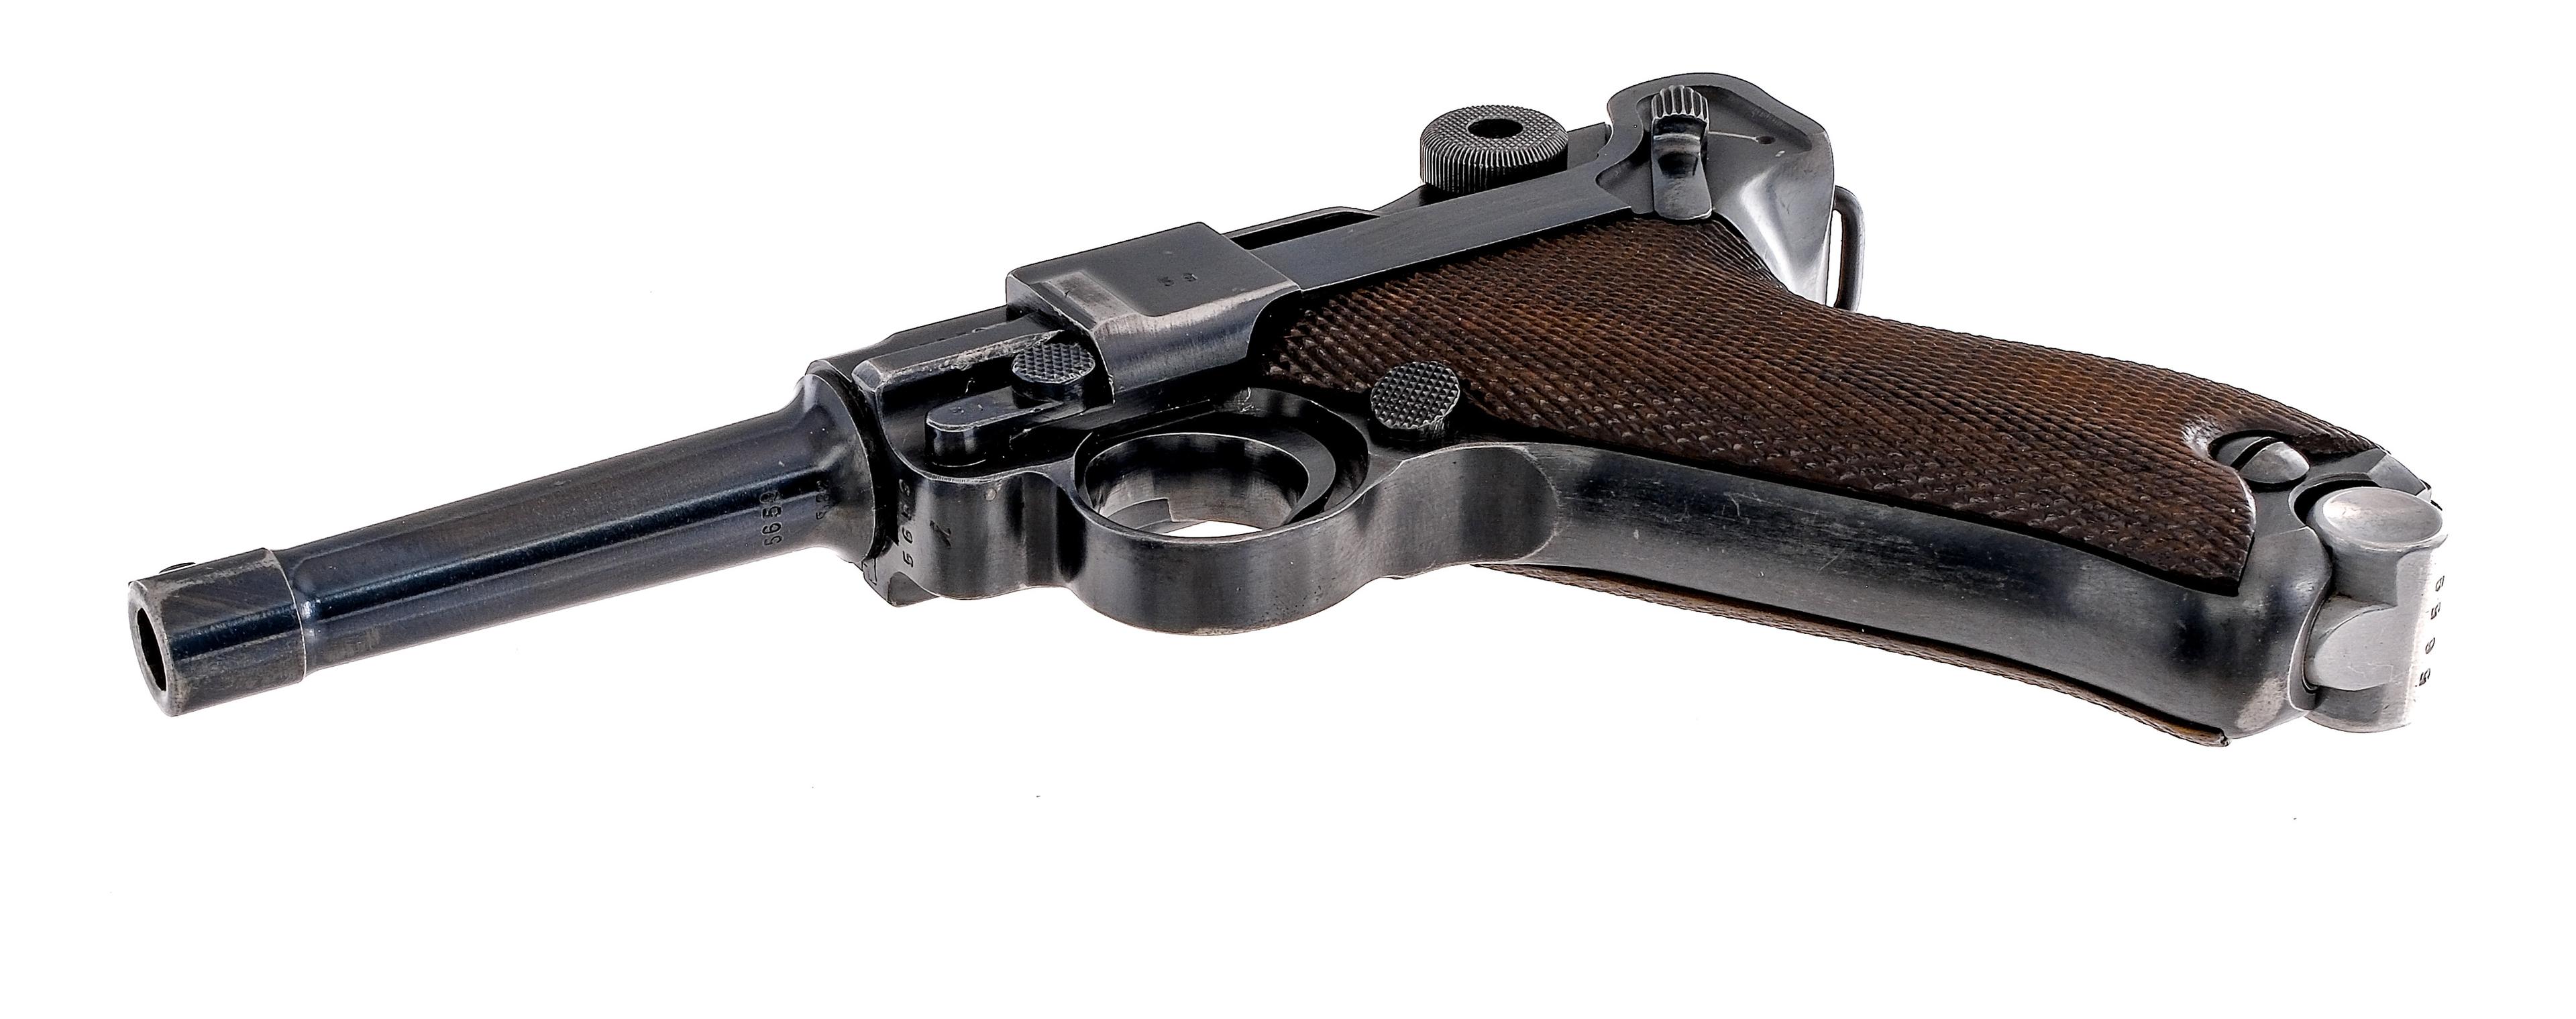 Mauser Luger P08 9mm 1938 Semi Auto Pistol